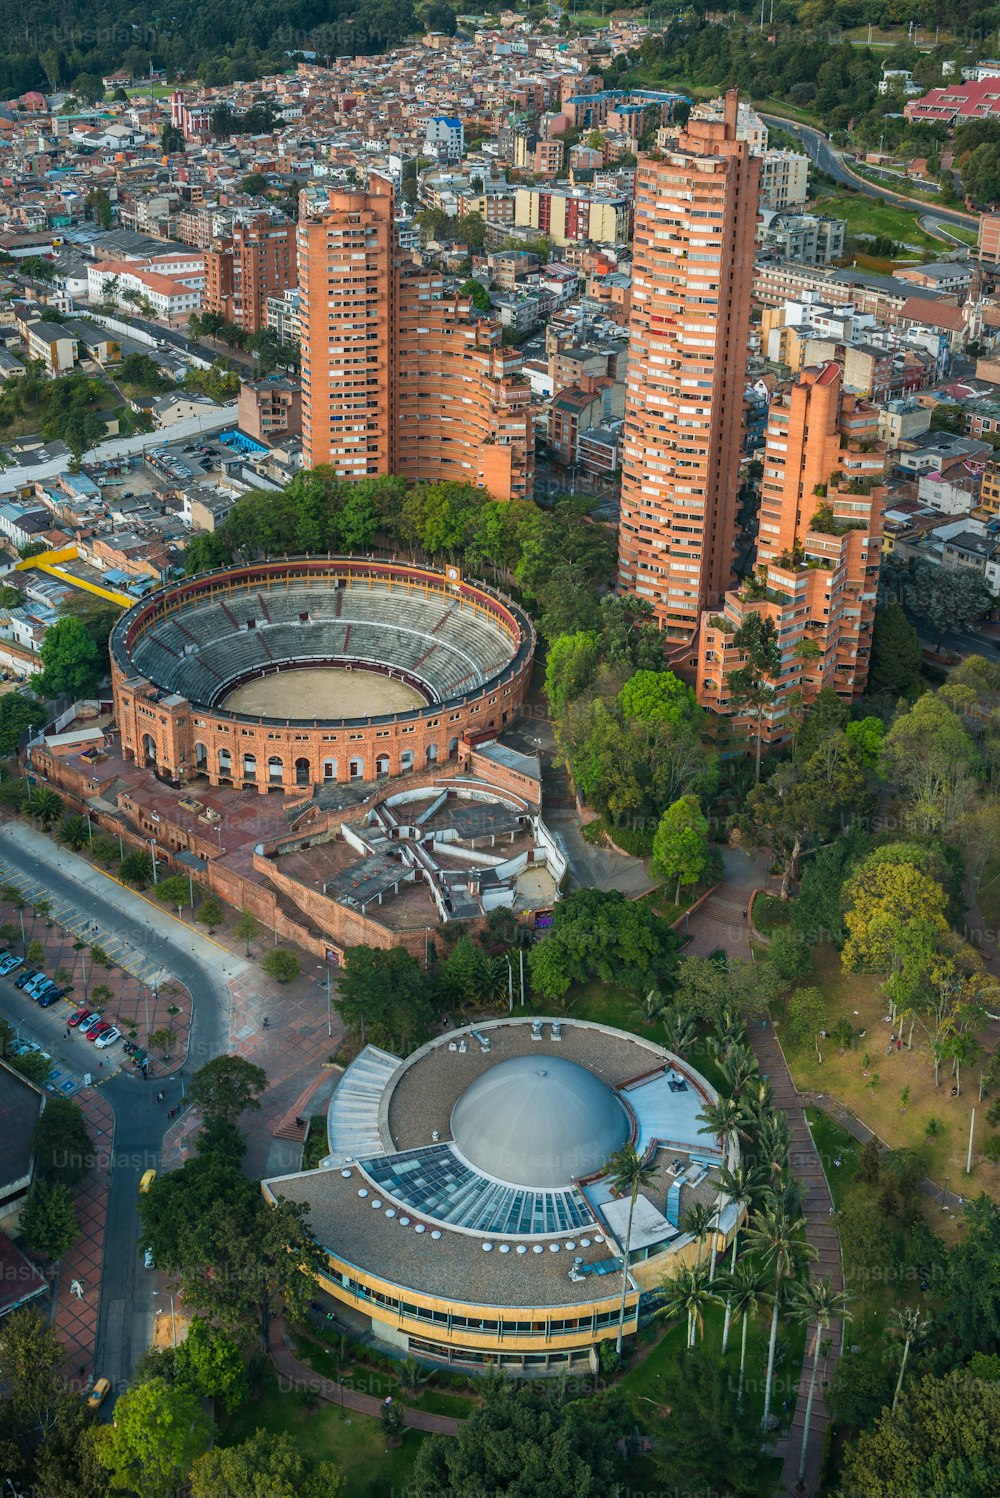 콜롬비아 보고타의 유명한 산타마리아 투우 경기장과 주변 건물의 수직 조감도